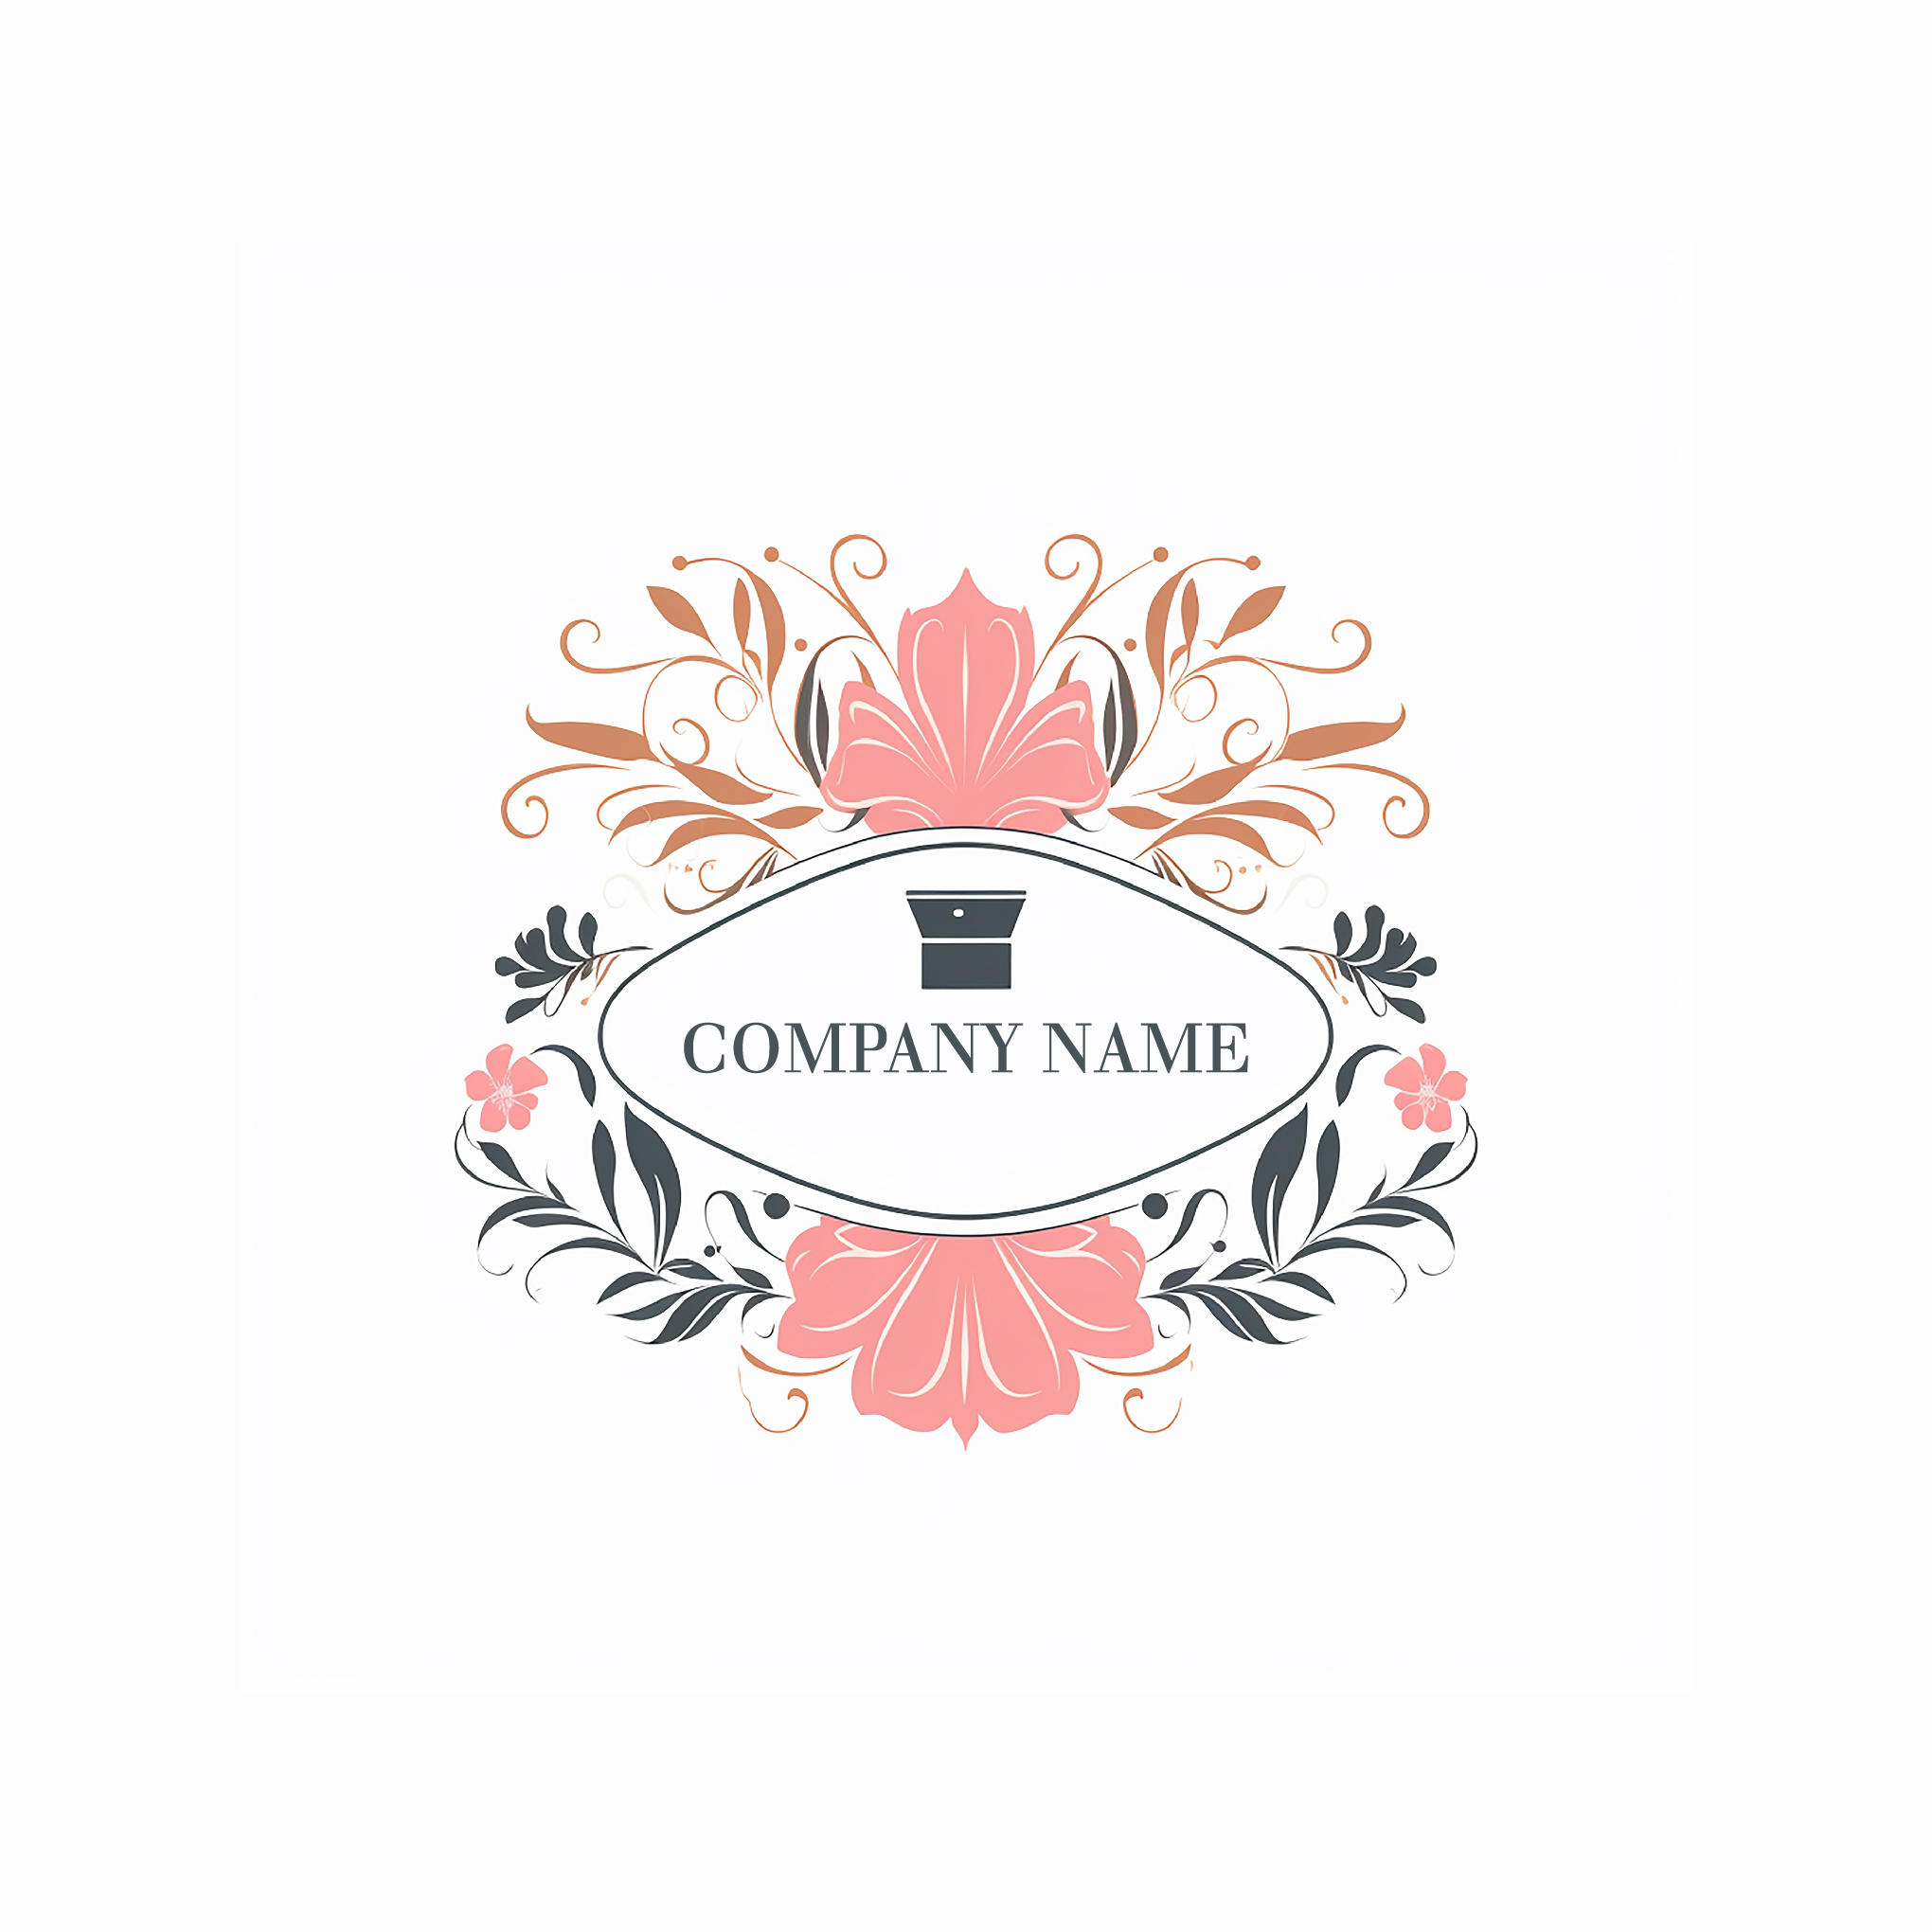 Premium Vector  Luxury perfume logo template design